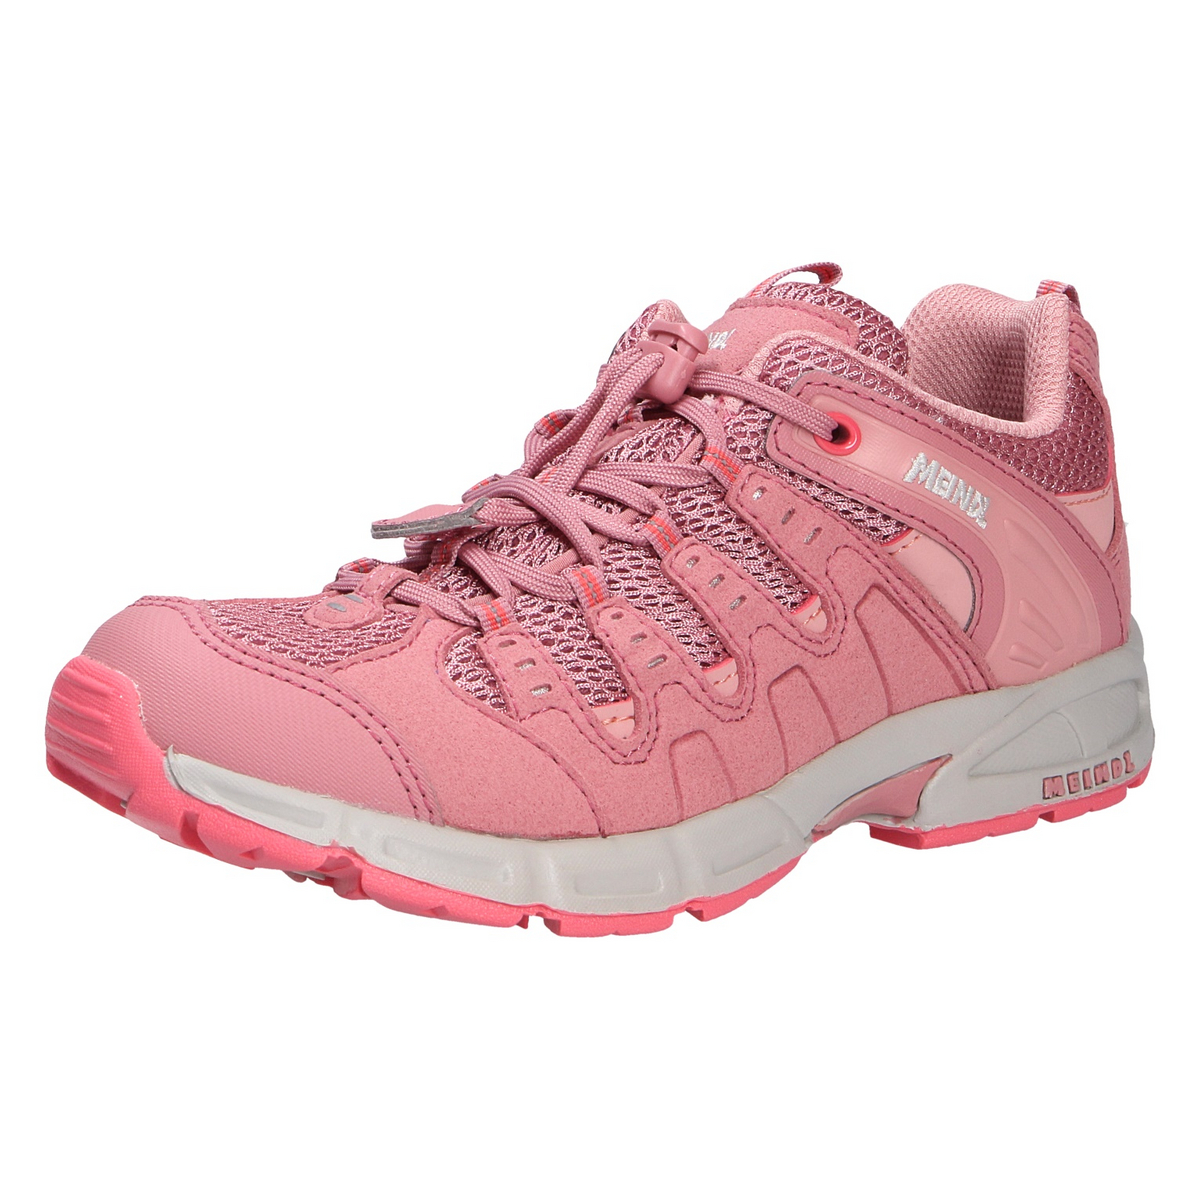 низкие кроссовки superfit halbschuh цвет rosa pink Низкие кроссовки MEINDL Halbschuh RESPOND, цвет rosa/pink